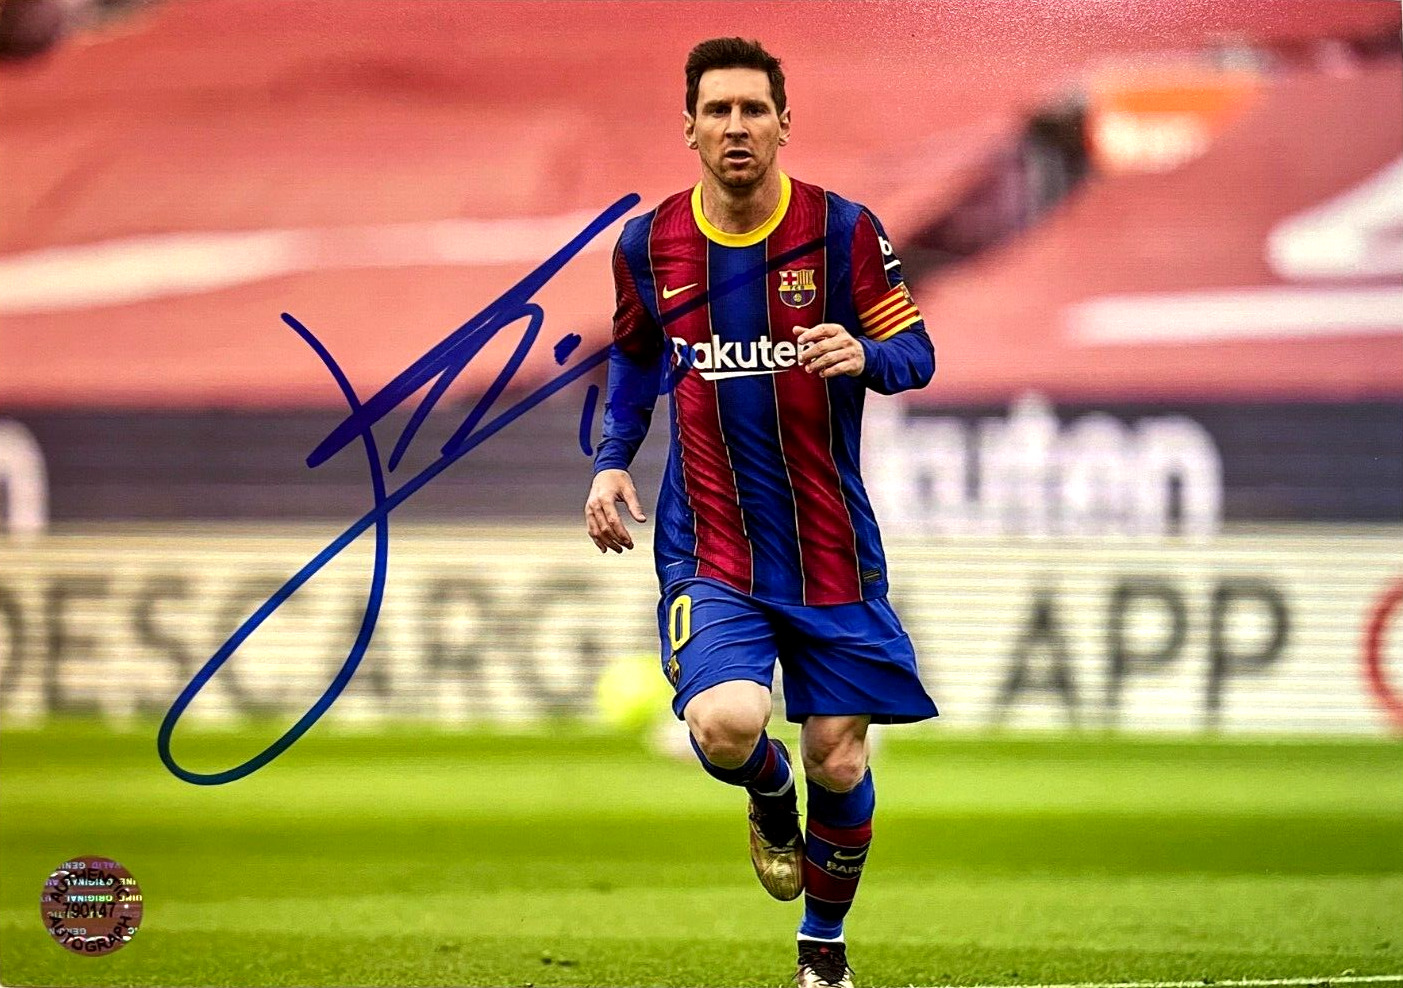 LIONEL MESSI Leo (Barcelona) Soccer Signed 7x5 in Photo Original Autograph w/COA